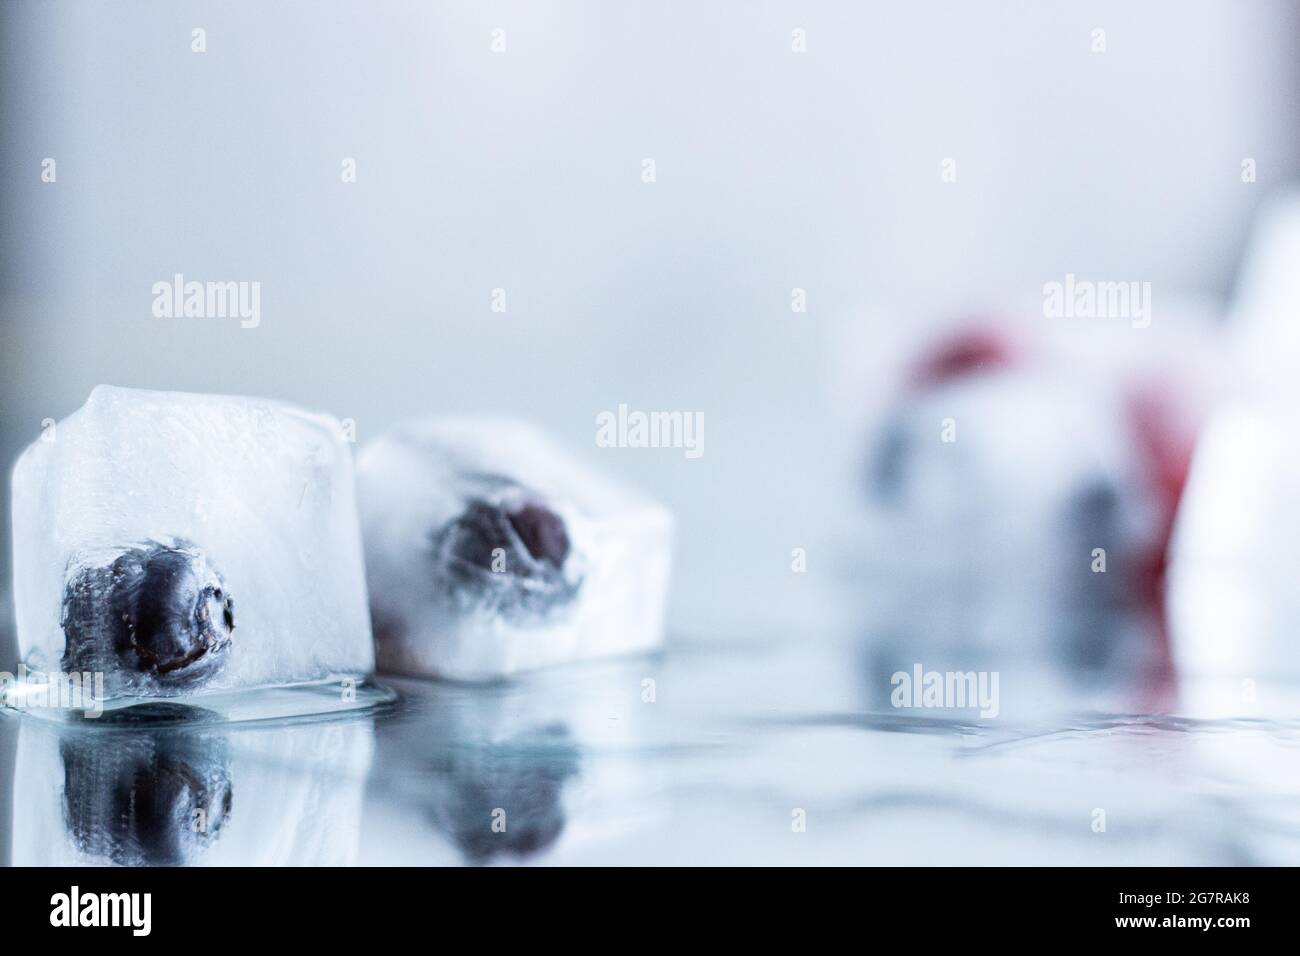 Primeros planos de frambuesas y arándanos congelados en cubitos de hielo con reflexión; cubitos de hielo derretido; saborizantes de agua saludables Foto de stock